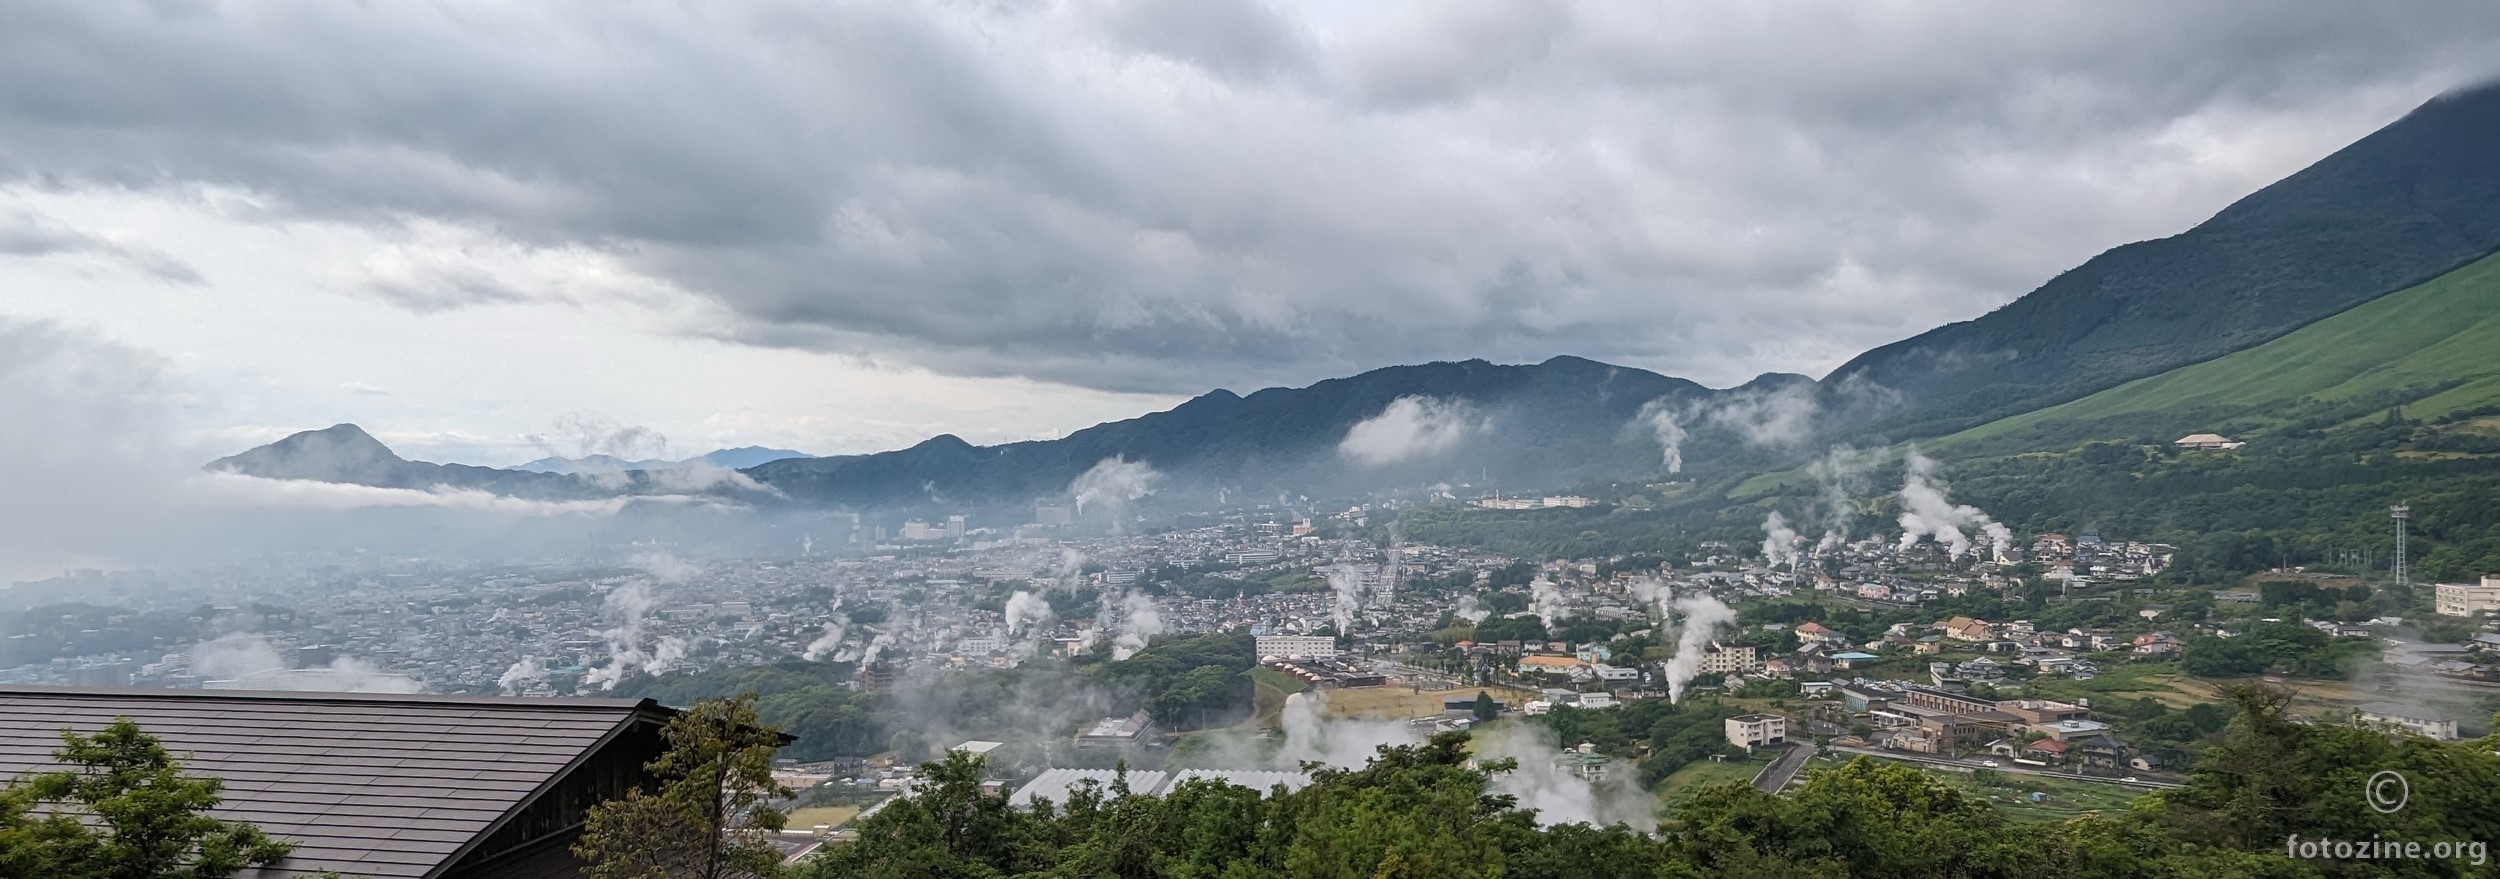 Beppu na ostrvu Kyushu - grad sa najvise geotermalnih izvora u Japanu